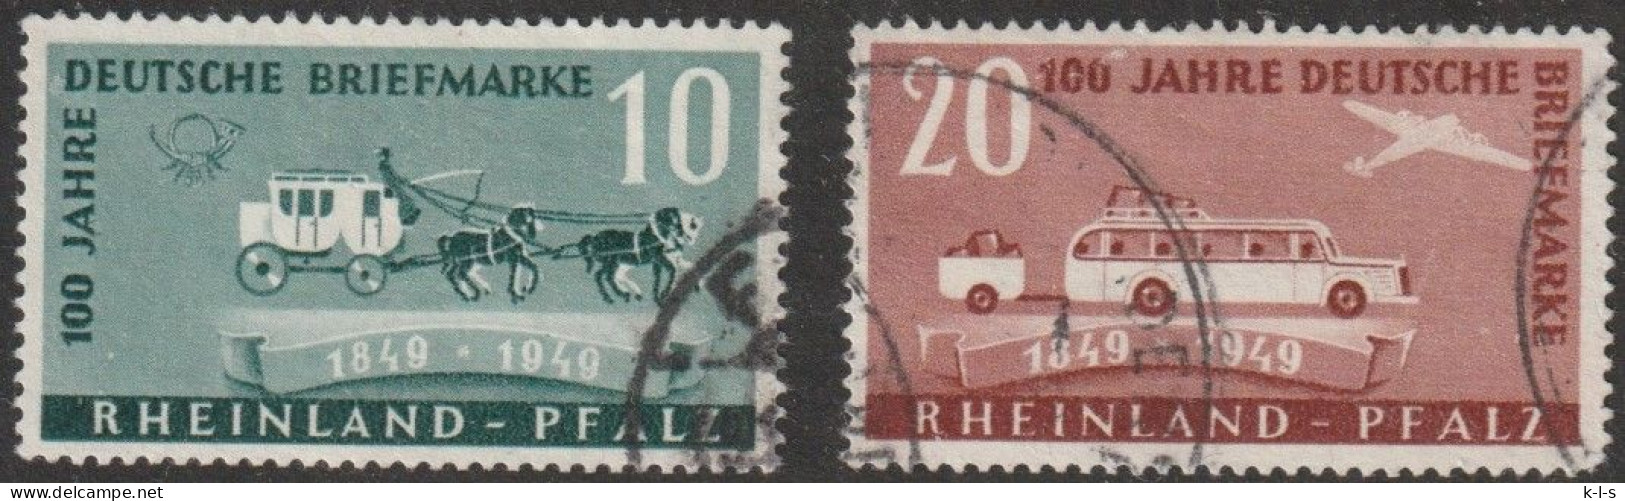 Franz. Zone- Rheinland Pfalz: 1949, Mi. Nr. 49-50,  100 Jahre Deutsche Briefmarken.  Gestpl./used - Rheinland-Pfalz